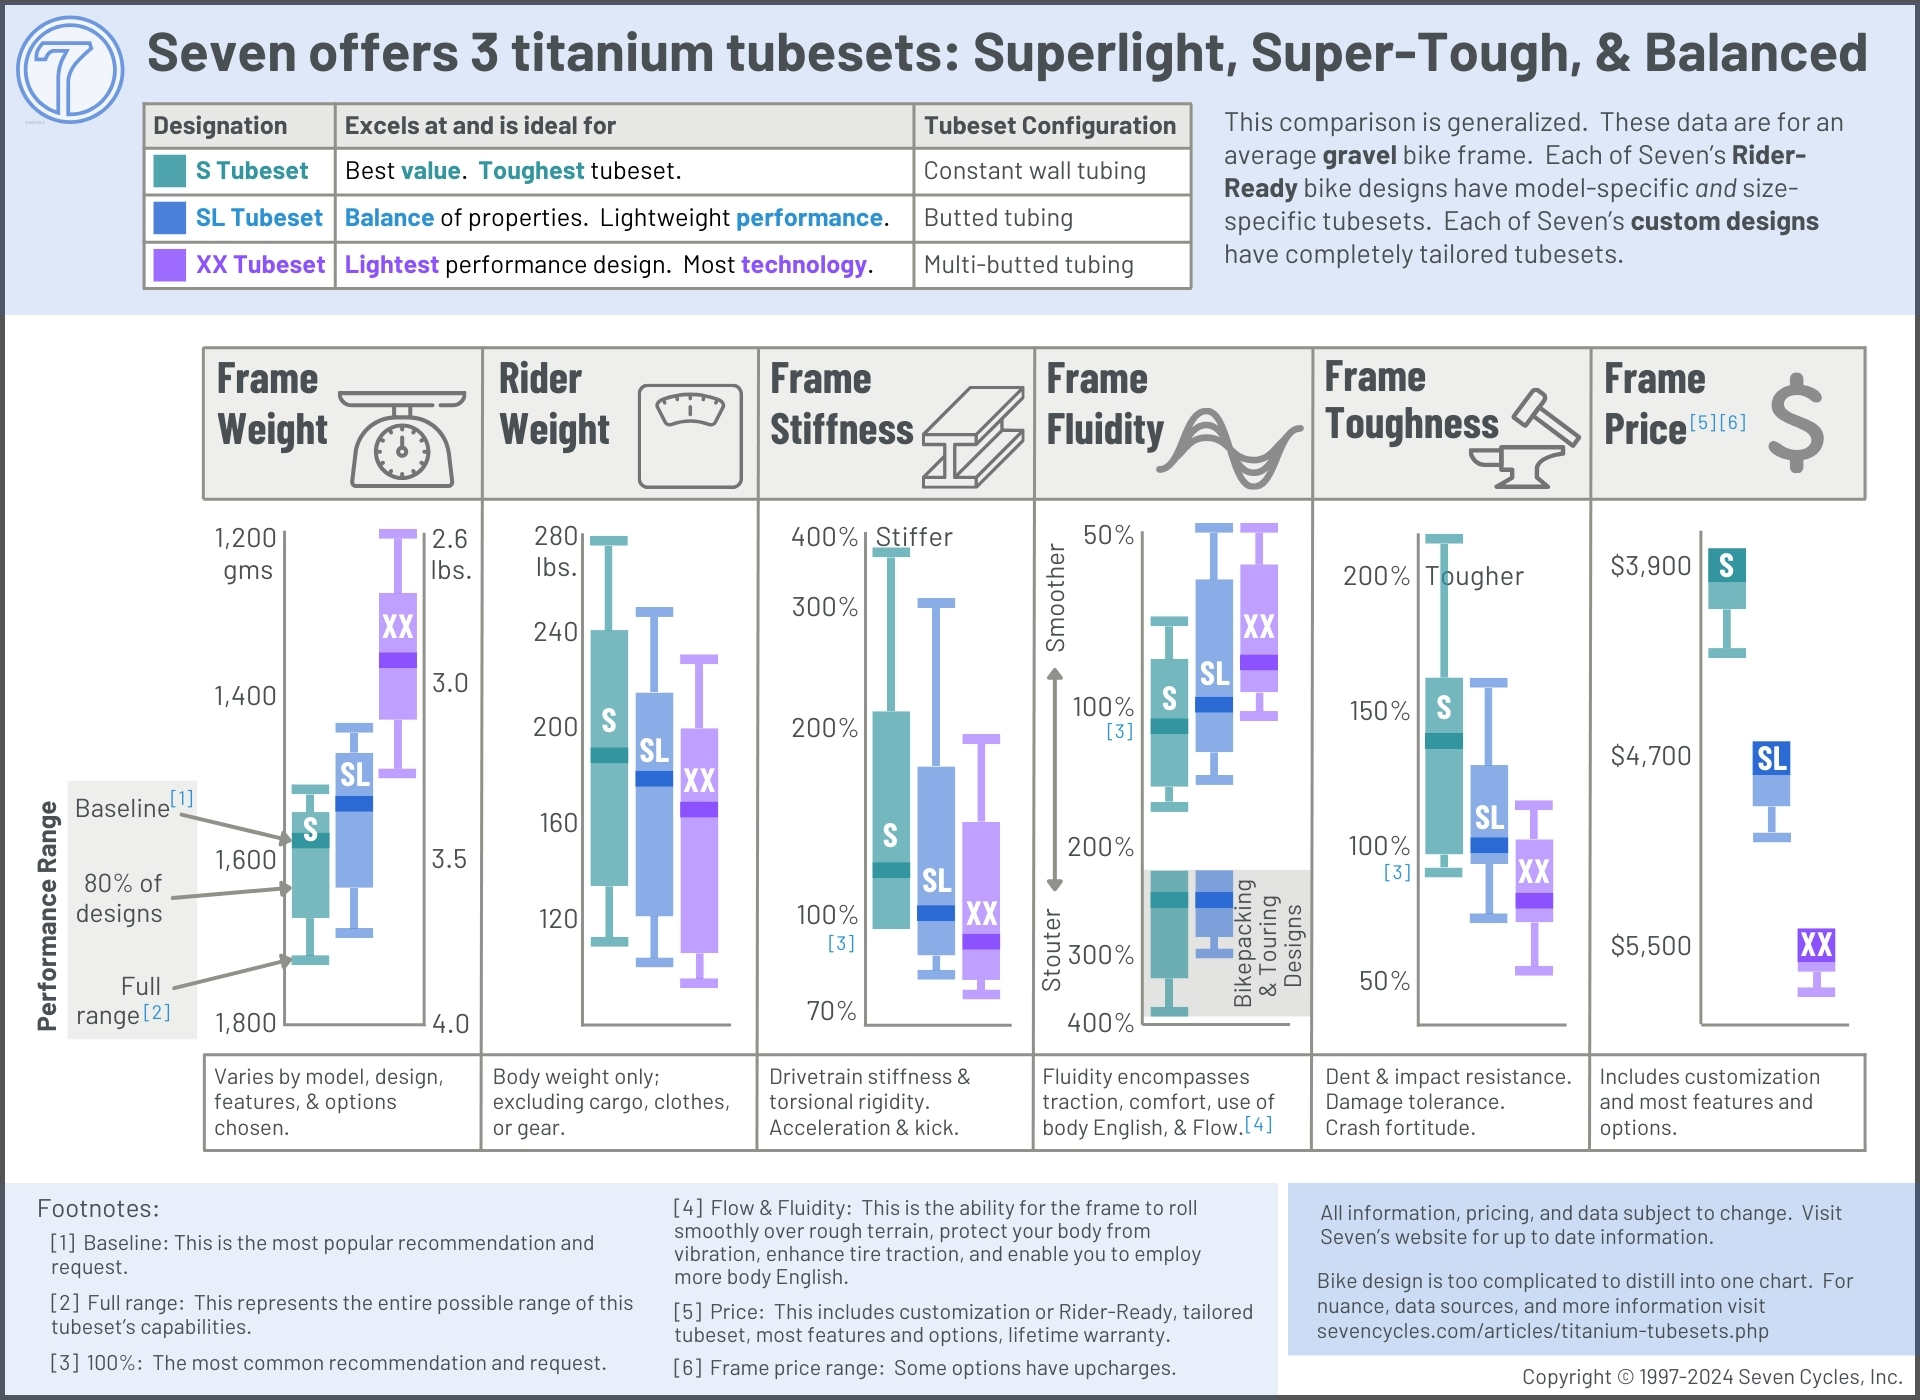 Seven's titanium tubeset offerings compared